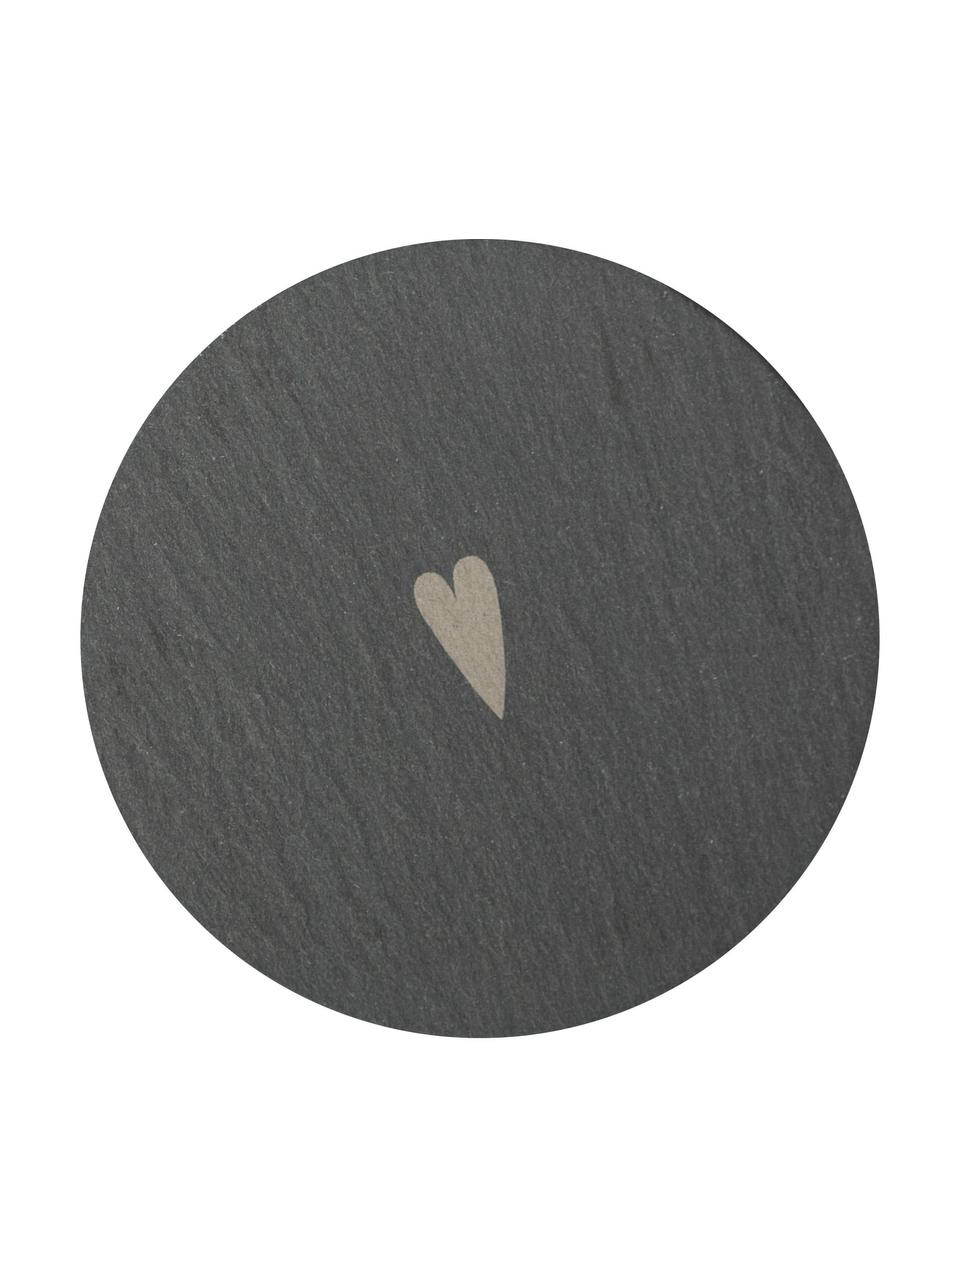 Untersetzer Heart aus Schieferstein, 2 Stück, Schieferstein, Dunkelgrau, Ø 10 cm